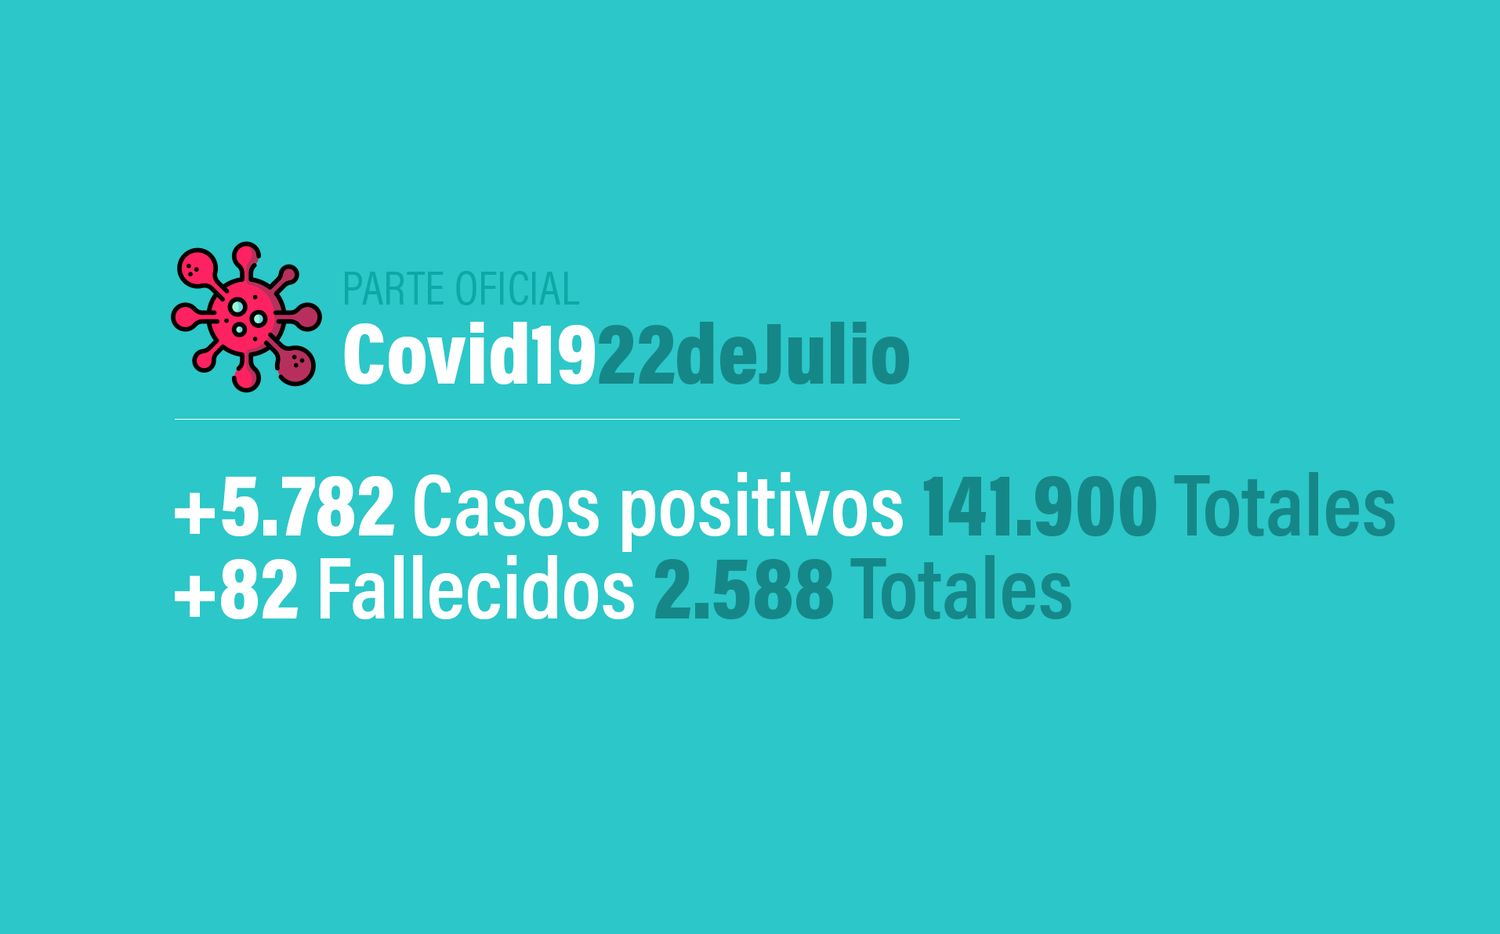 Coronavirus en Argentina: 5782 nuevos casos, 141900 confirmados, 60531 recuperados y 2588 muertes, al 22 de julio